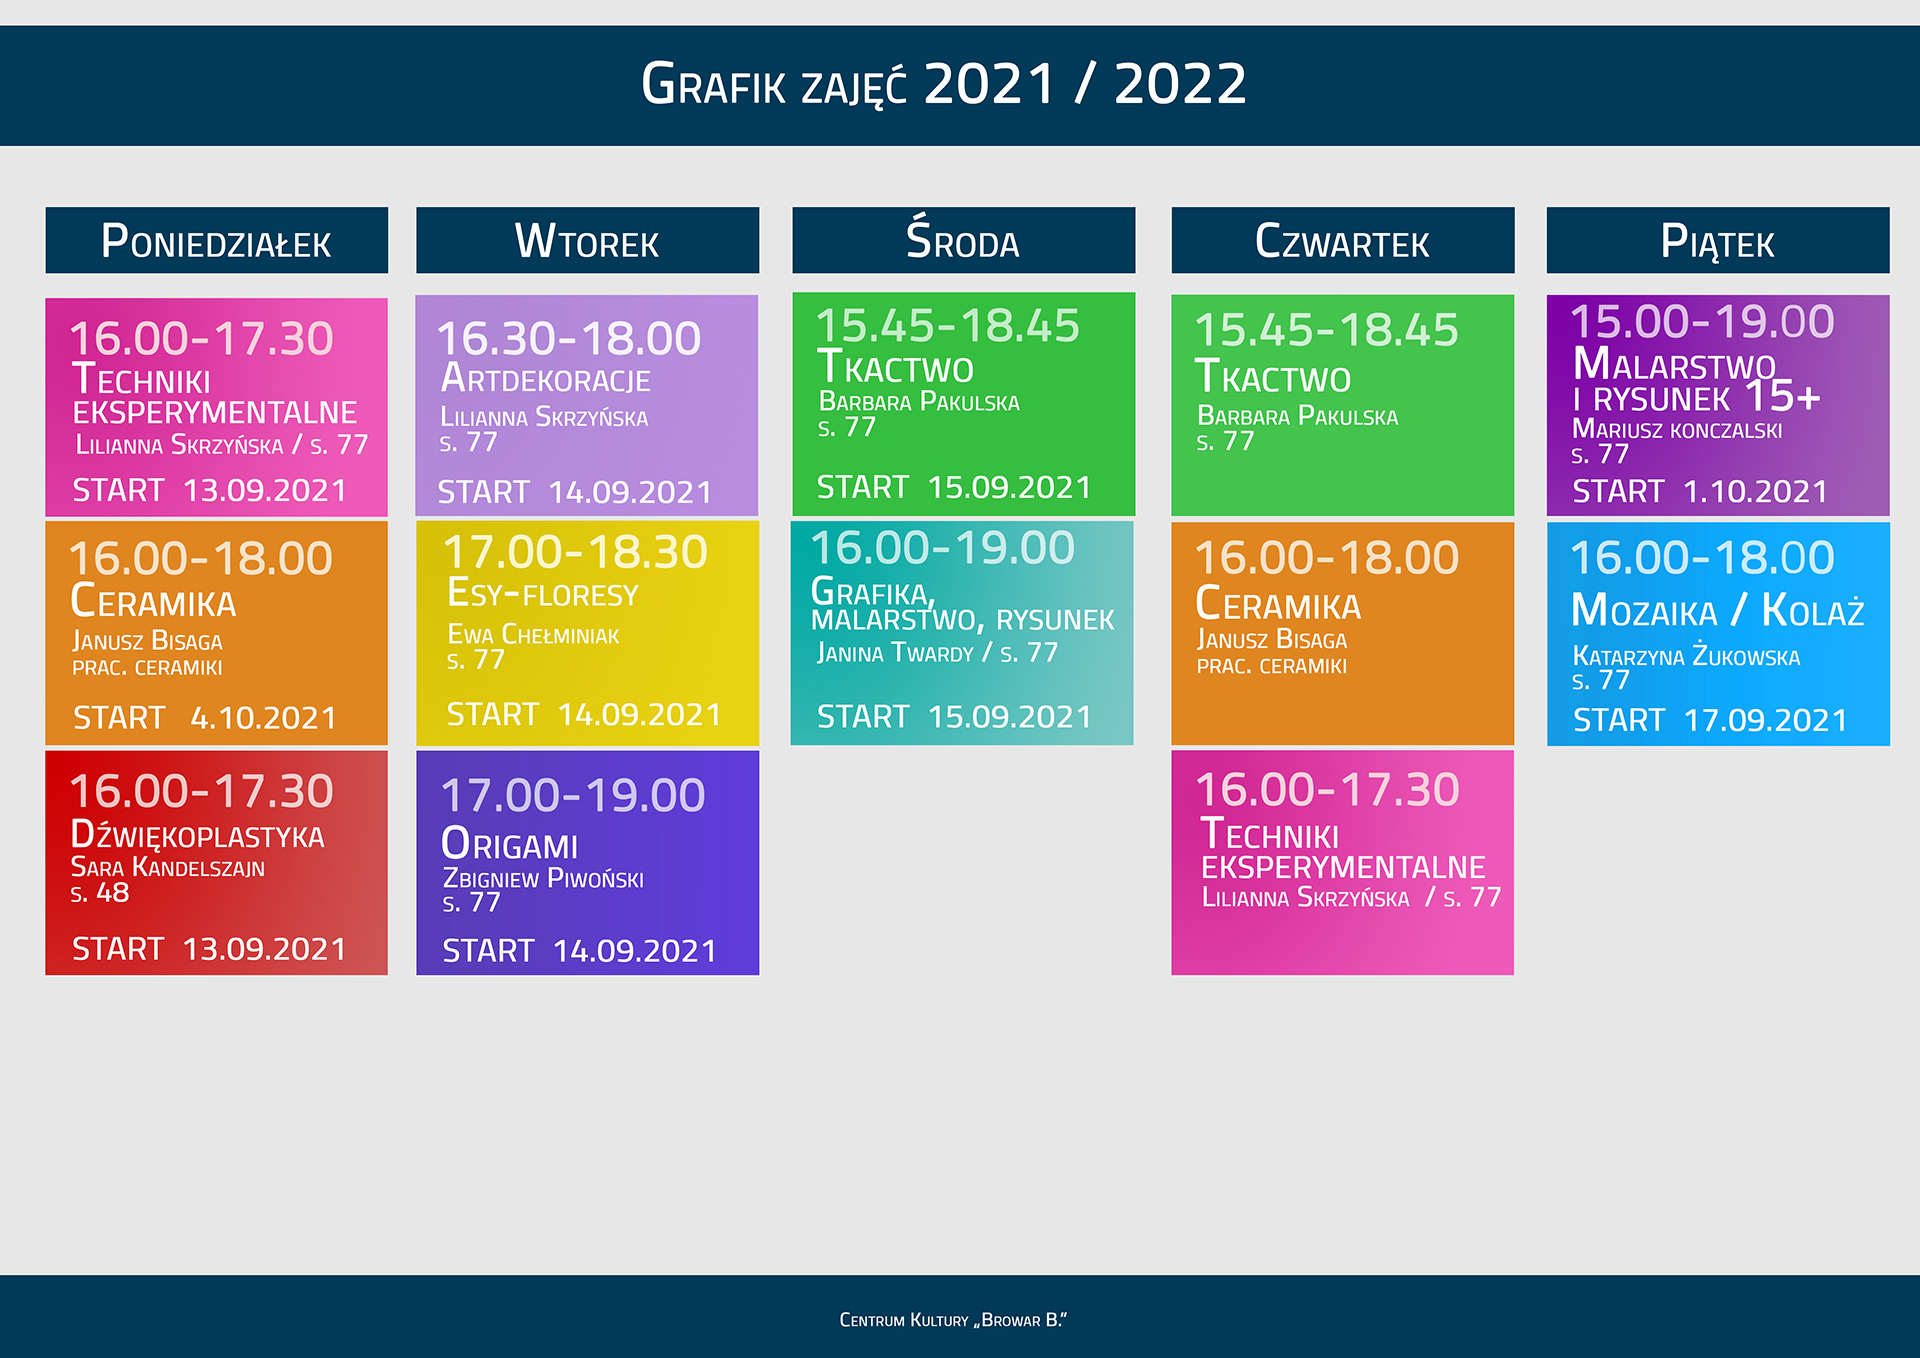 GRAFIK ZAJEC PEP 2021-22 + start